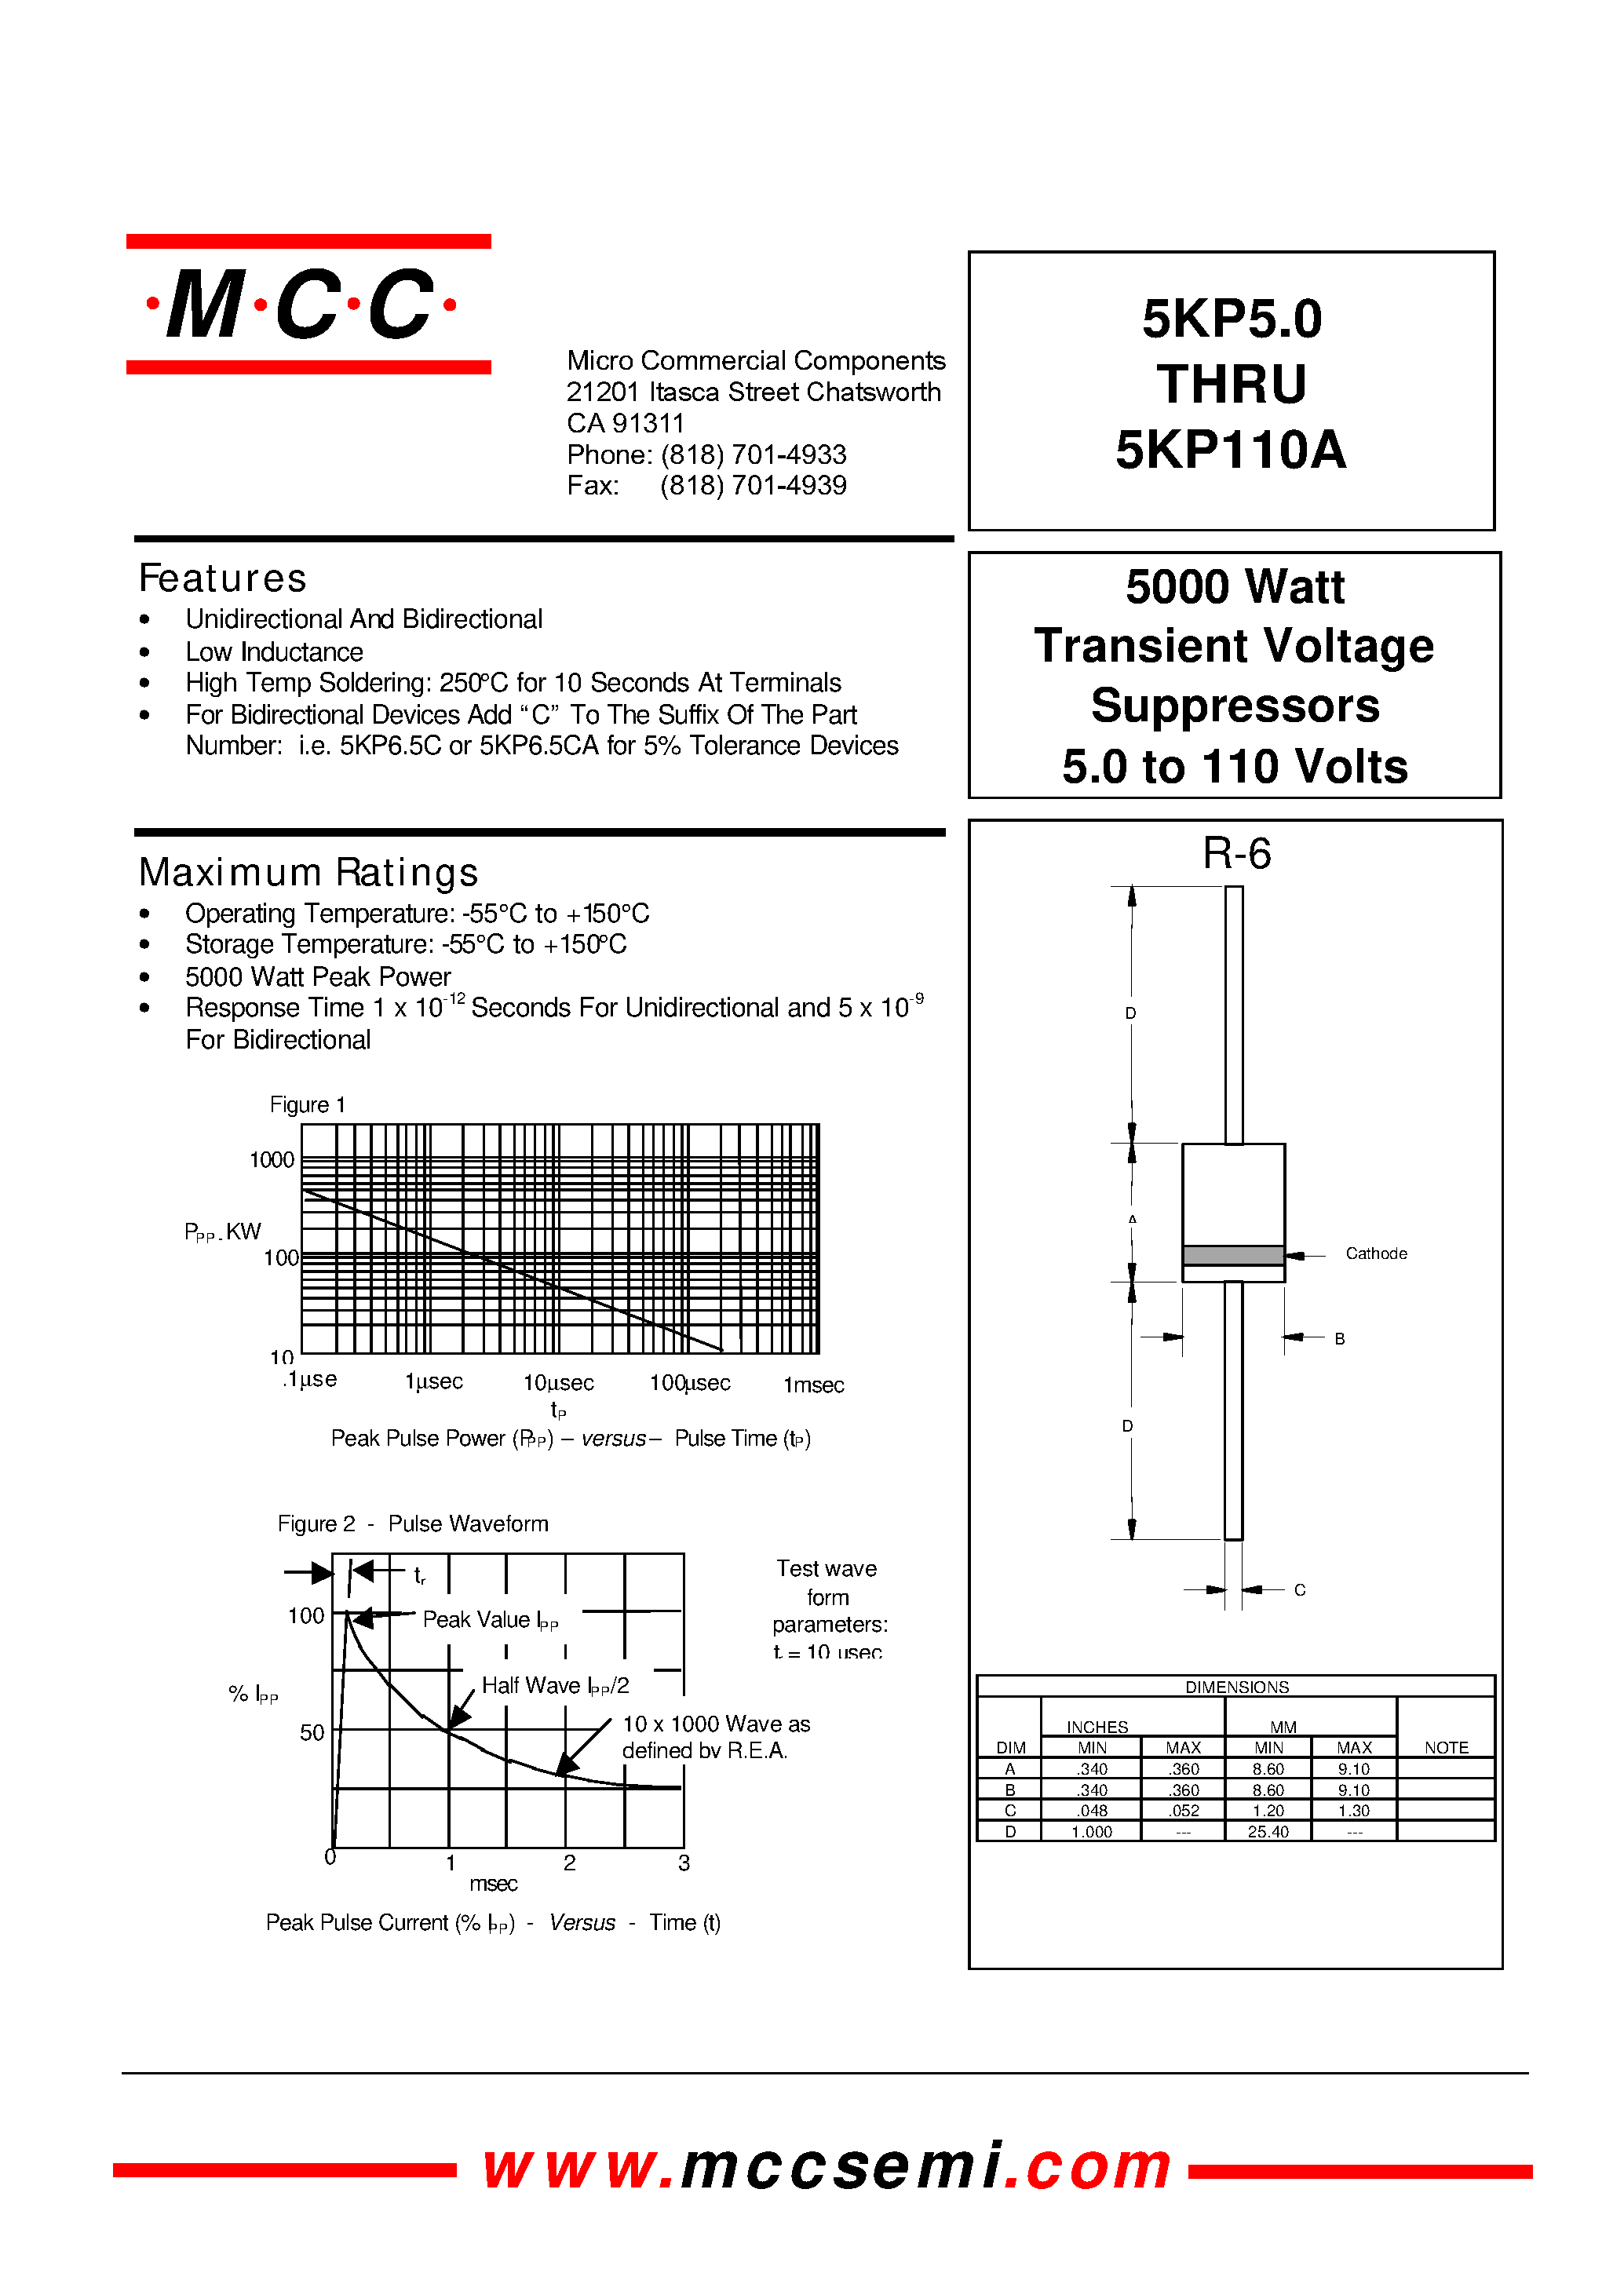 Datasheet 5KP7.5 - 5000 Watt Transient Voltage Suppressors 5.0 to 110 Volts page 1